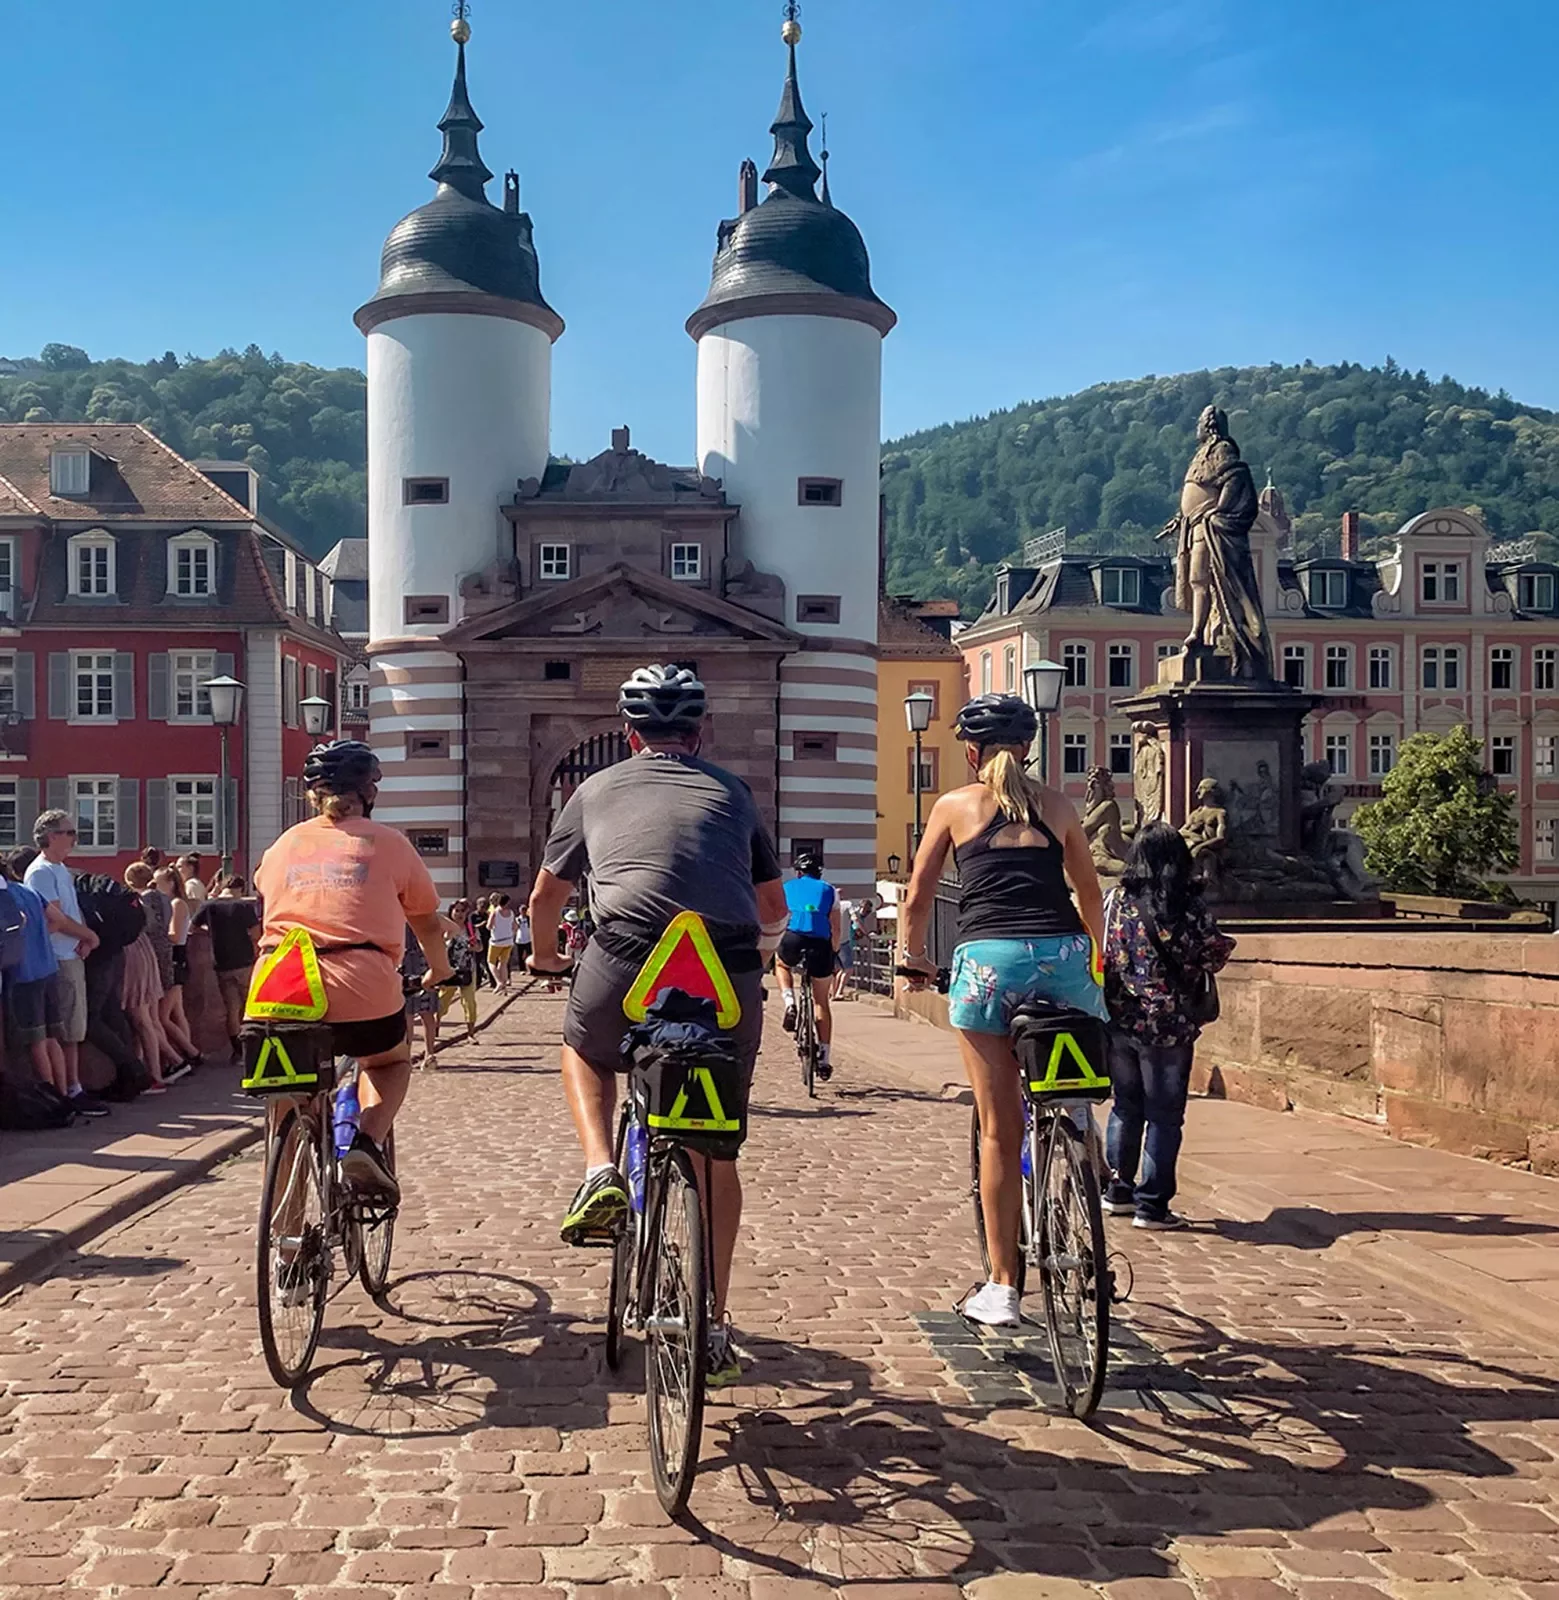 Bikers headed towards a castle